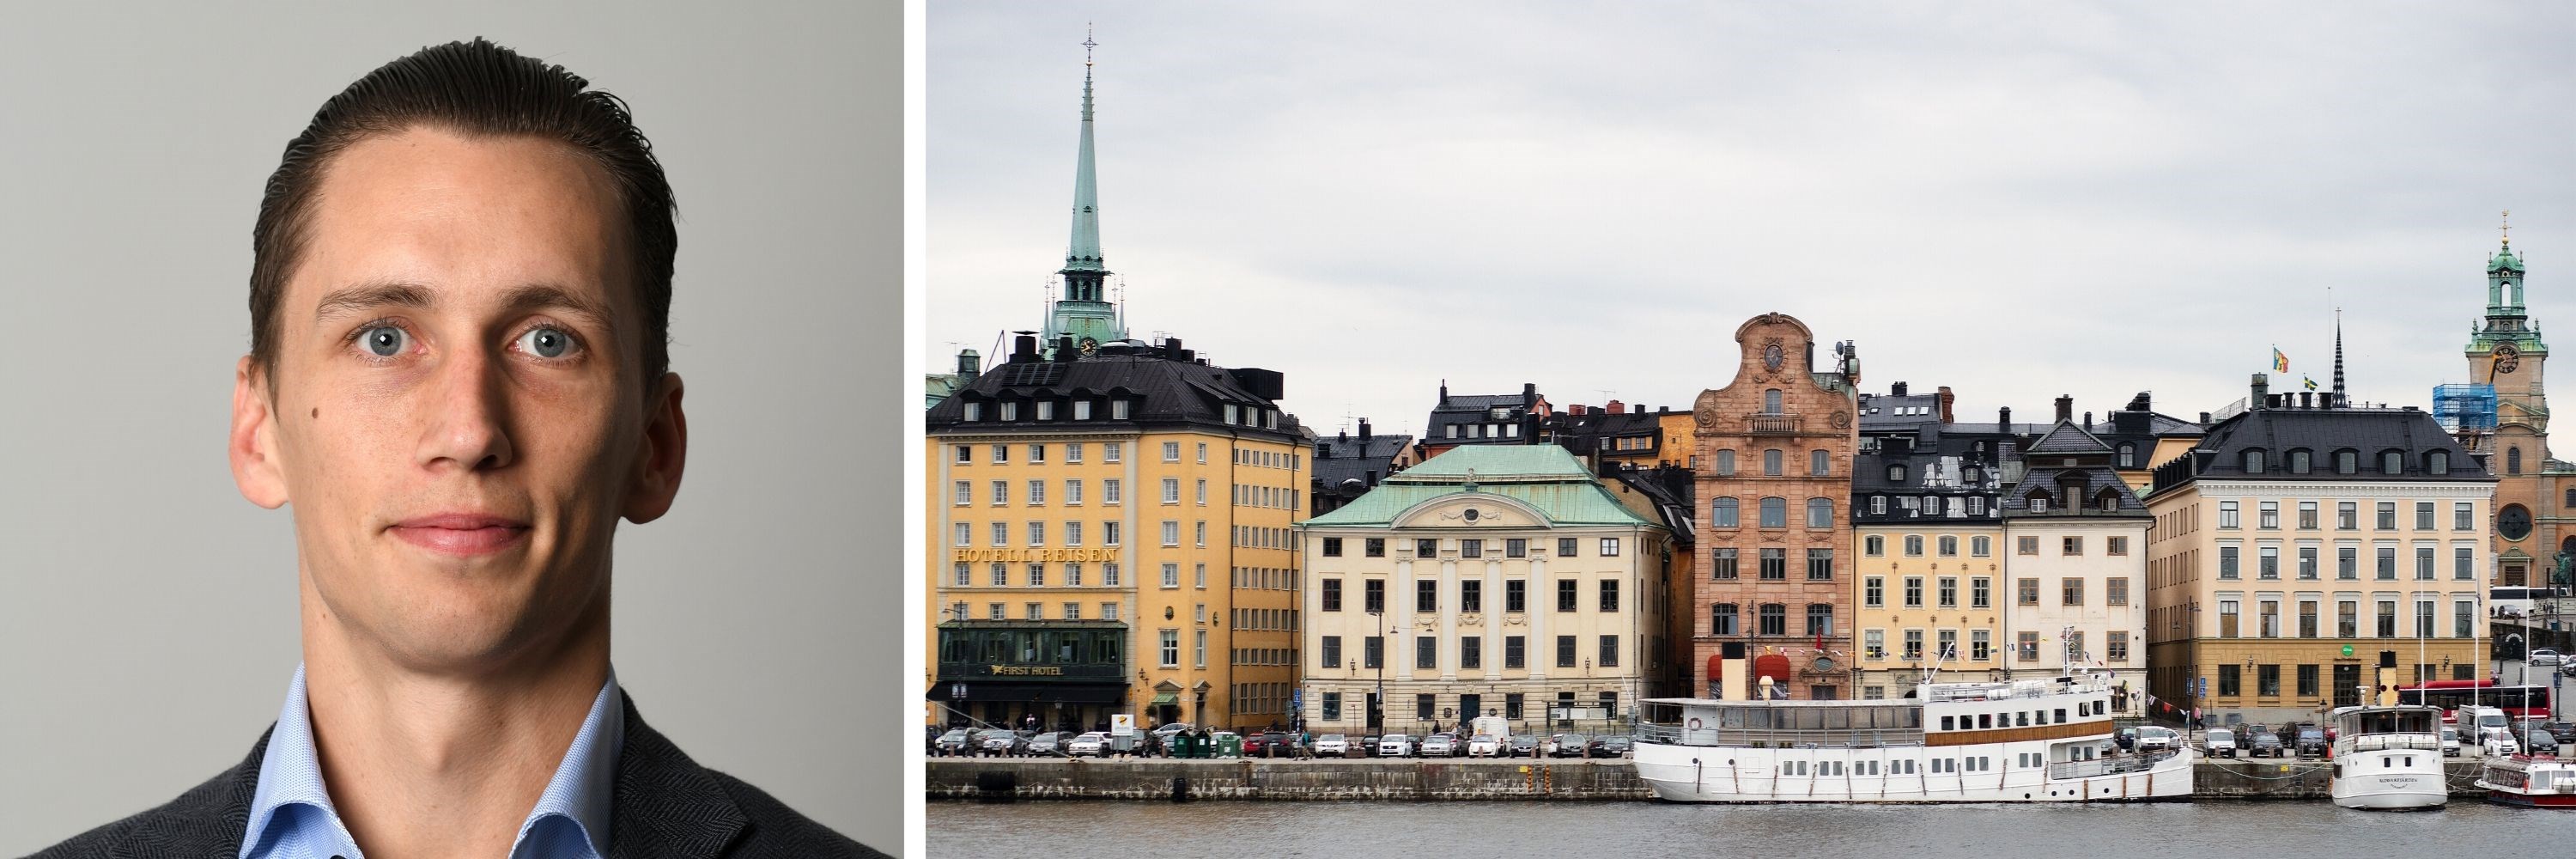 Bilde av mennesker som går i gate i Stockholm og bilde av Alexander L. P. Willén.